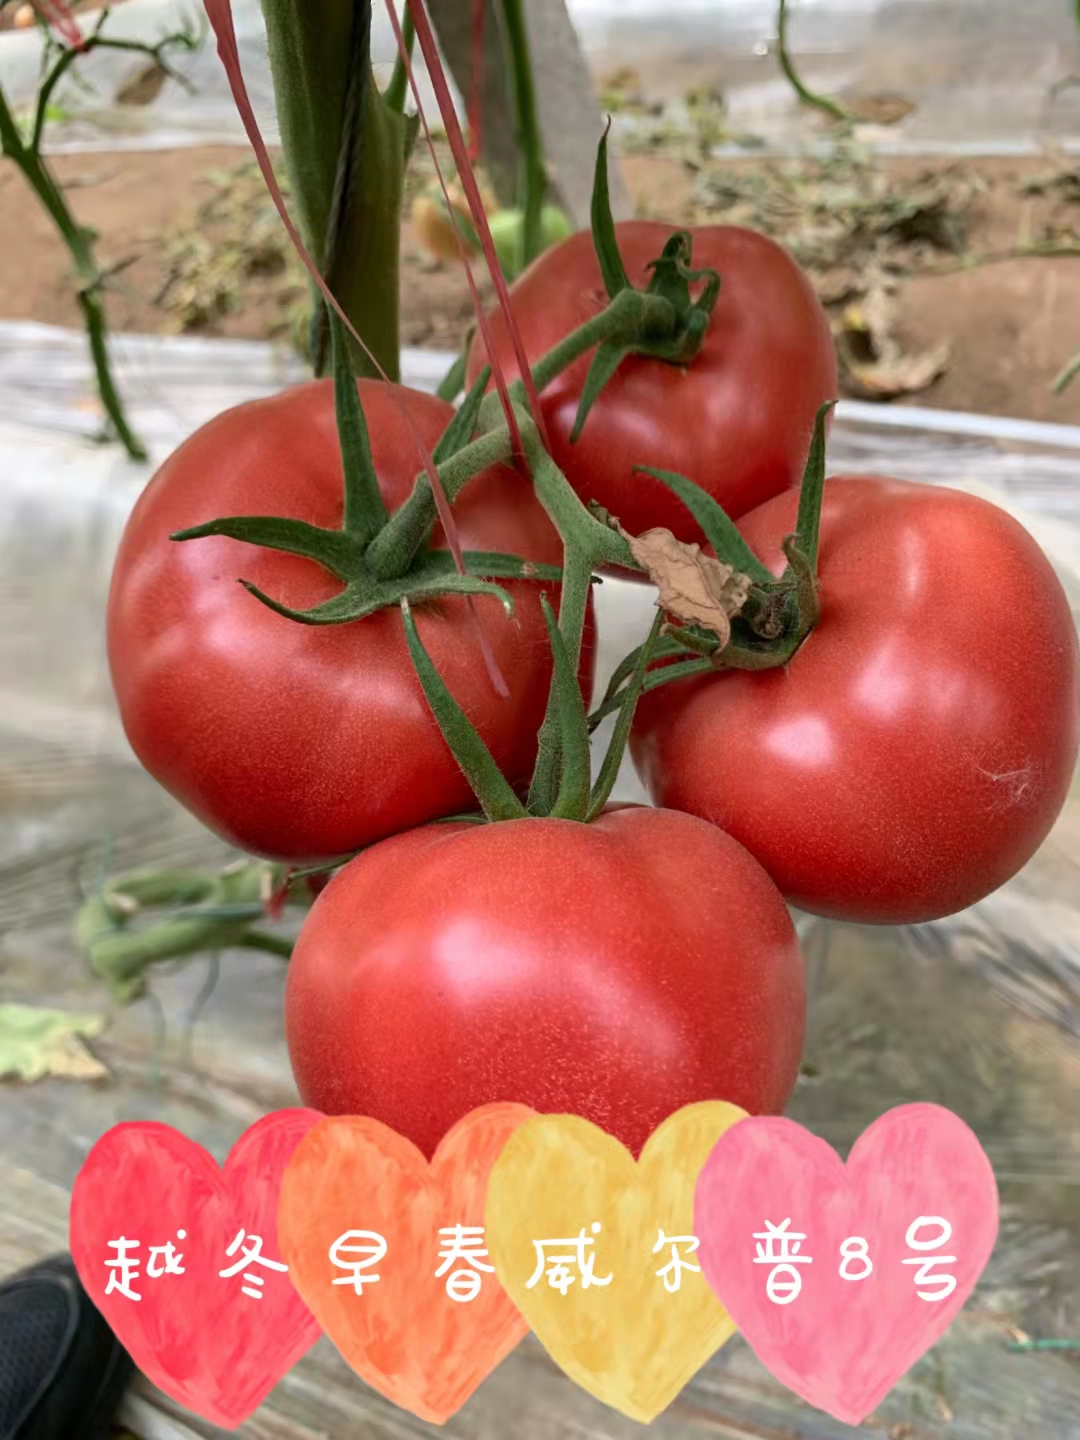 山东青岛威尔普8号番茄种子批发公司销售价格 威尔普8号种子 惠泽-威尔普8号种子